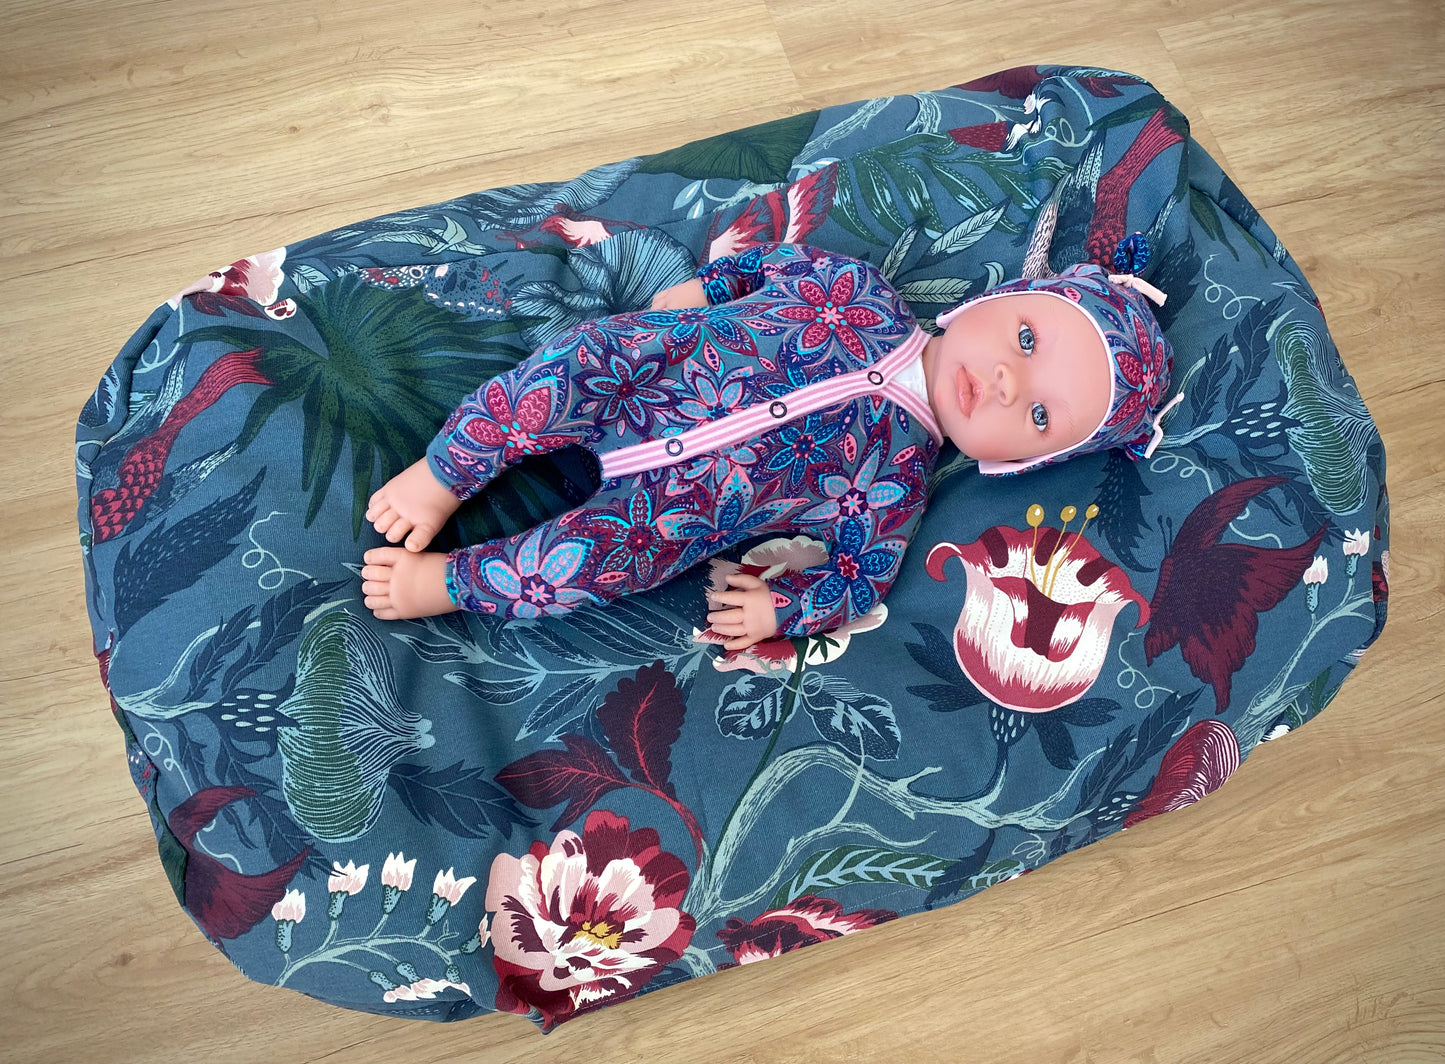 Babykissen für sicheres Schlafen im Elternbett - große Übersichtsaufnahme.